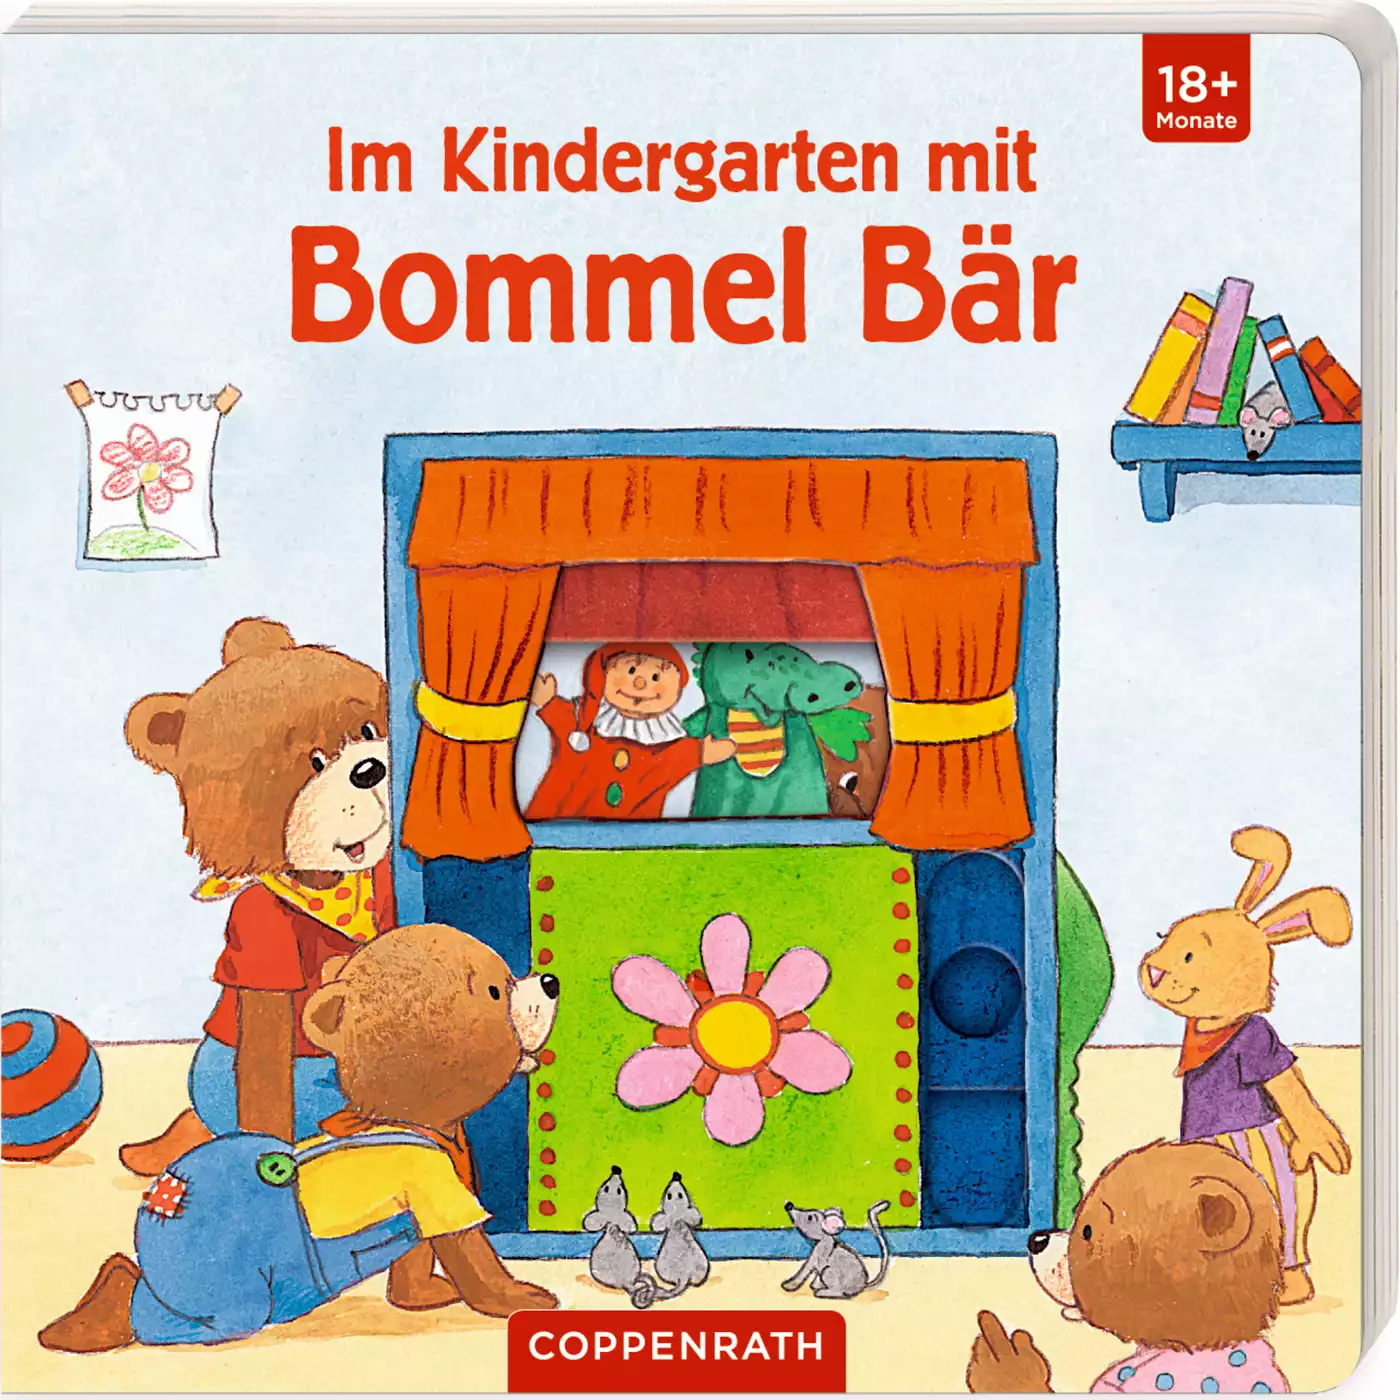 Im Kindergarten mit Bommel Bär COPPENRATH 2000574908502 1